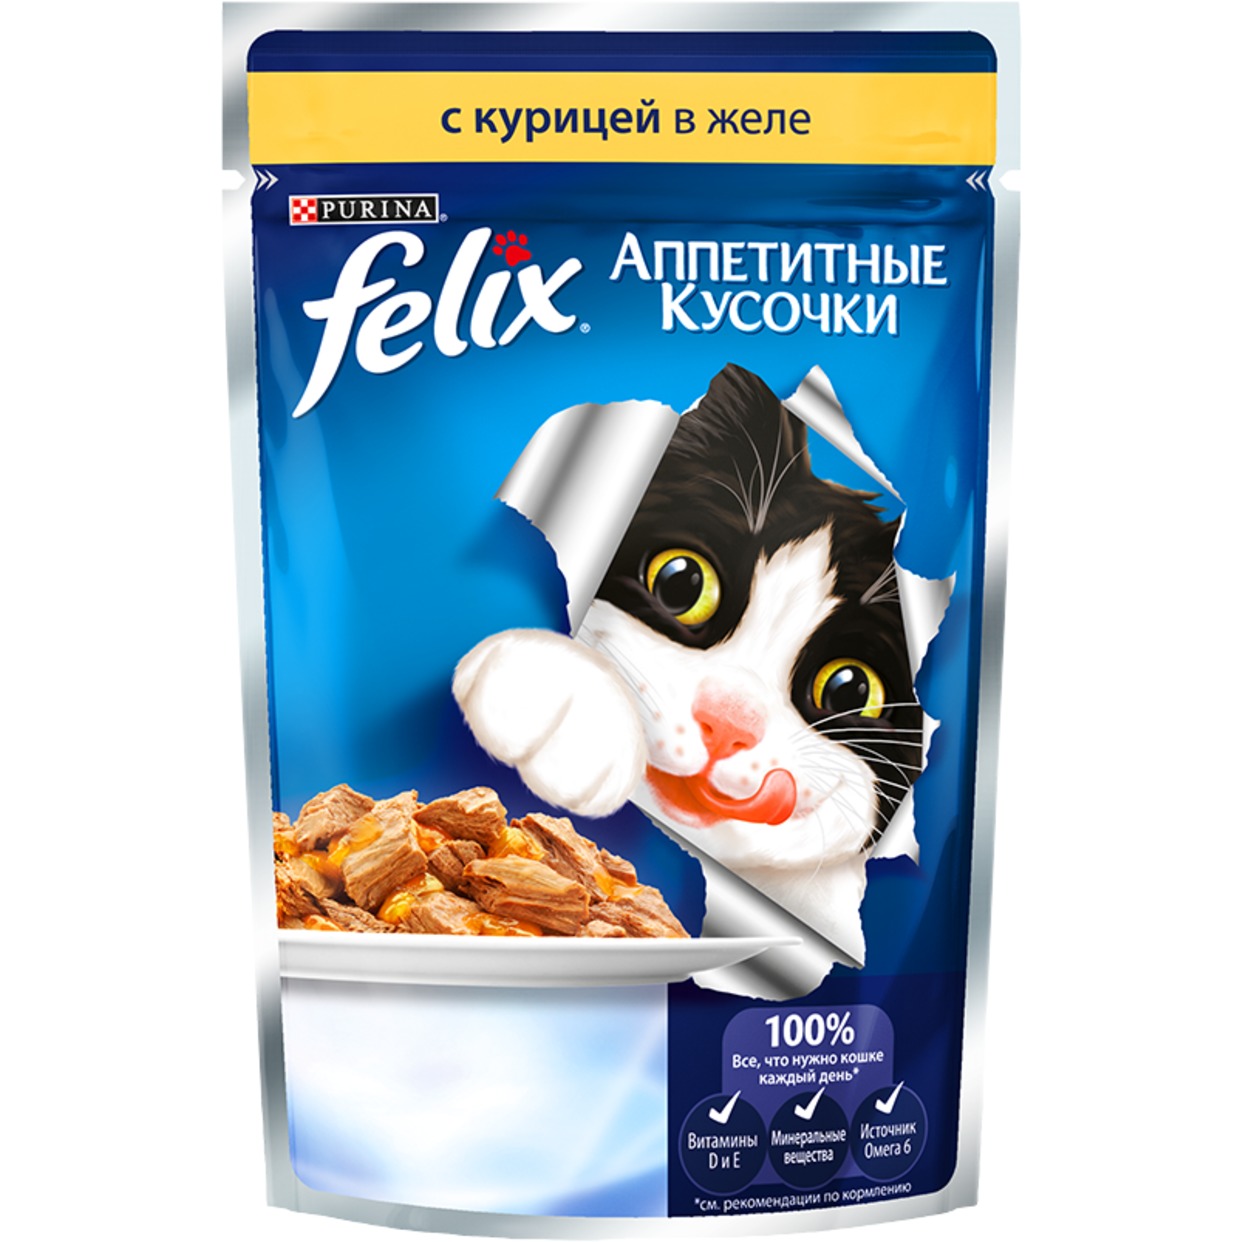 Корм для кошек Felix Аппетитные кусочки с курицей в желе 85 г по акции в Пятерочке